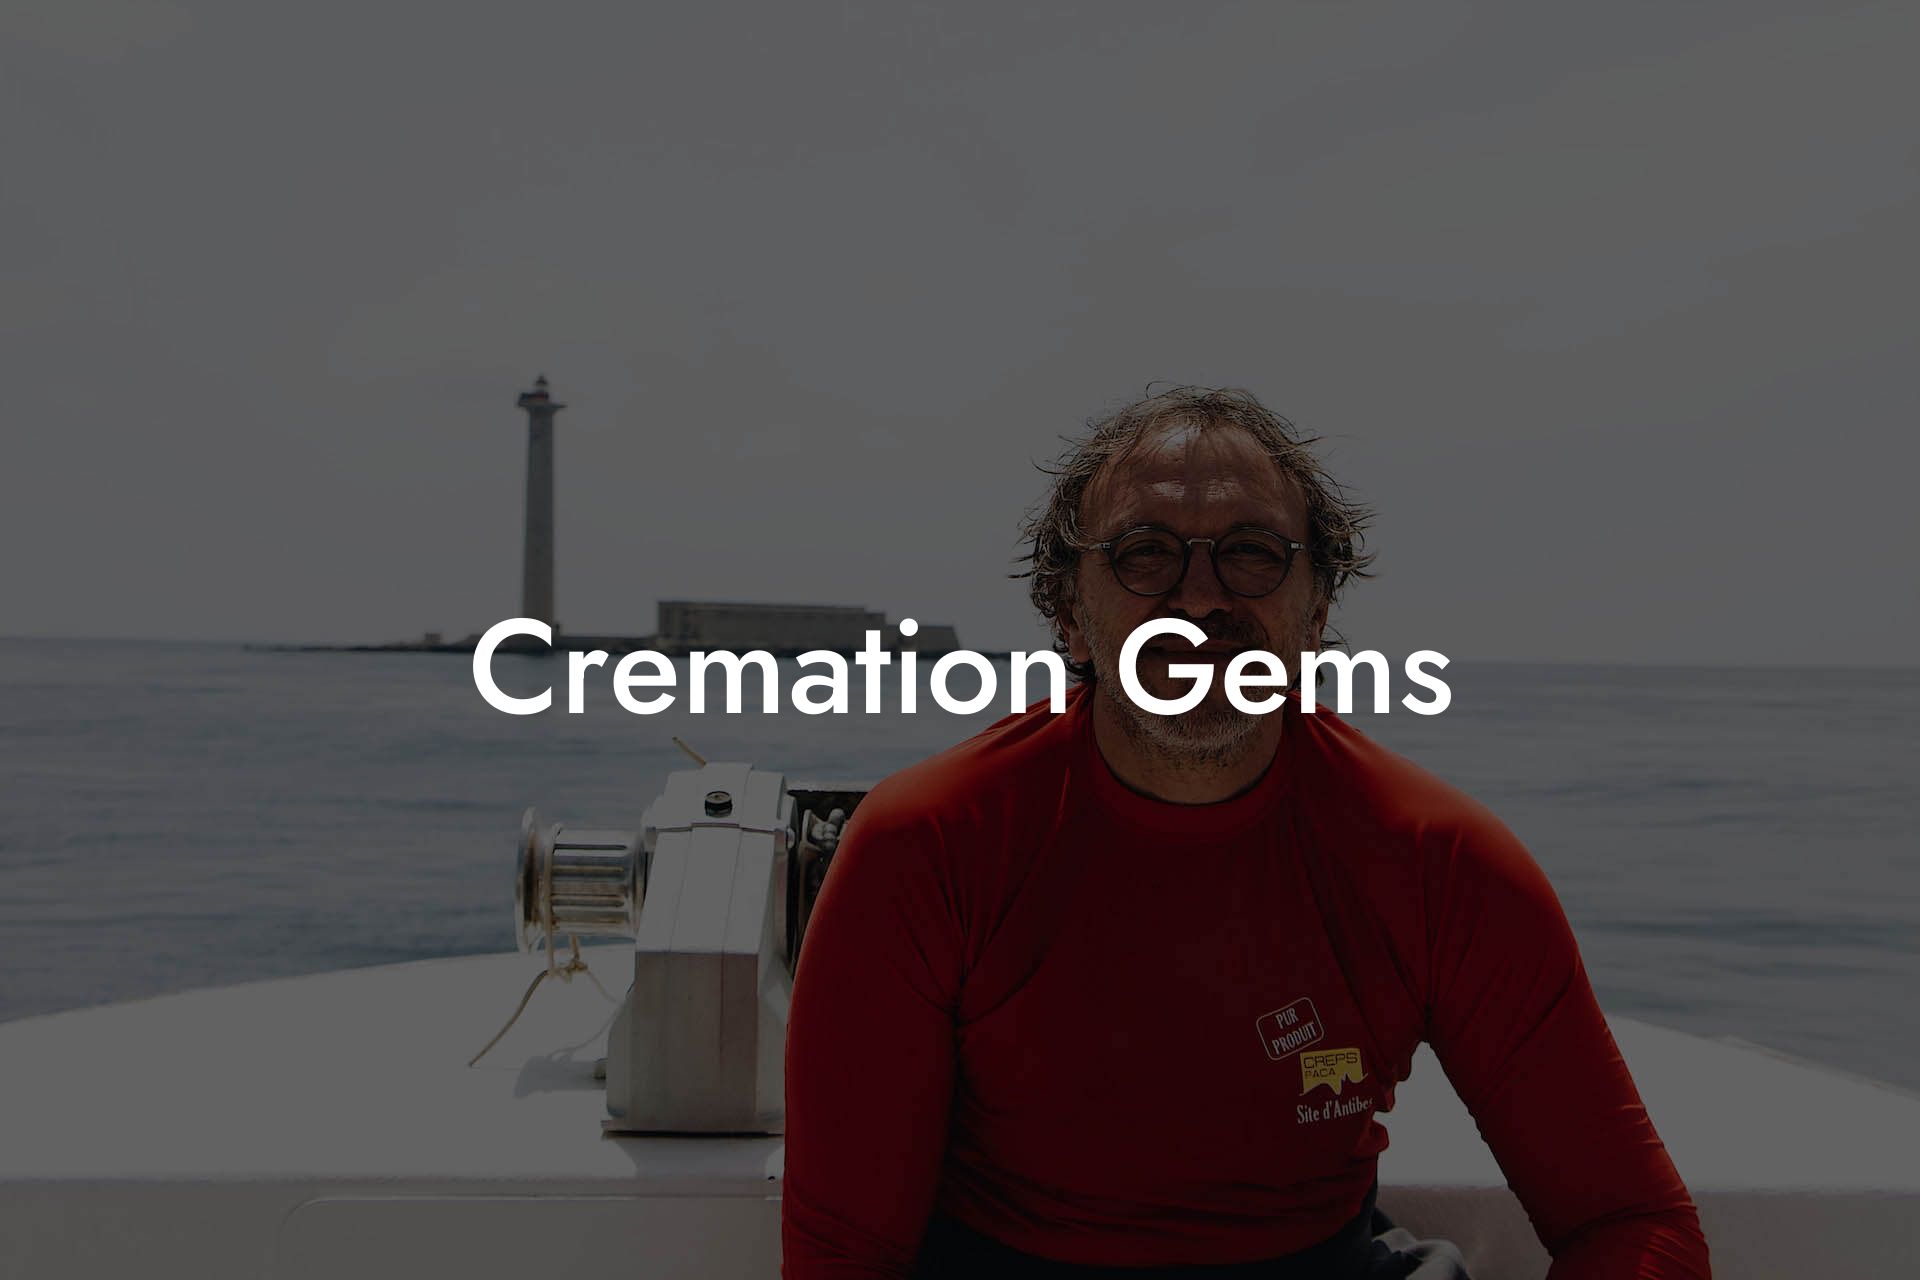 Cremation Gems